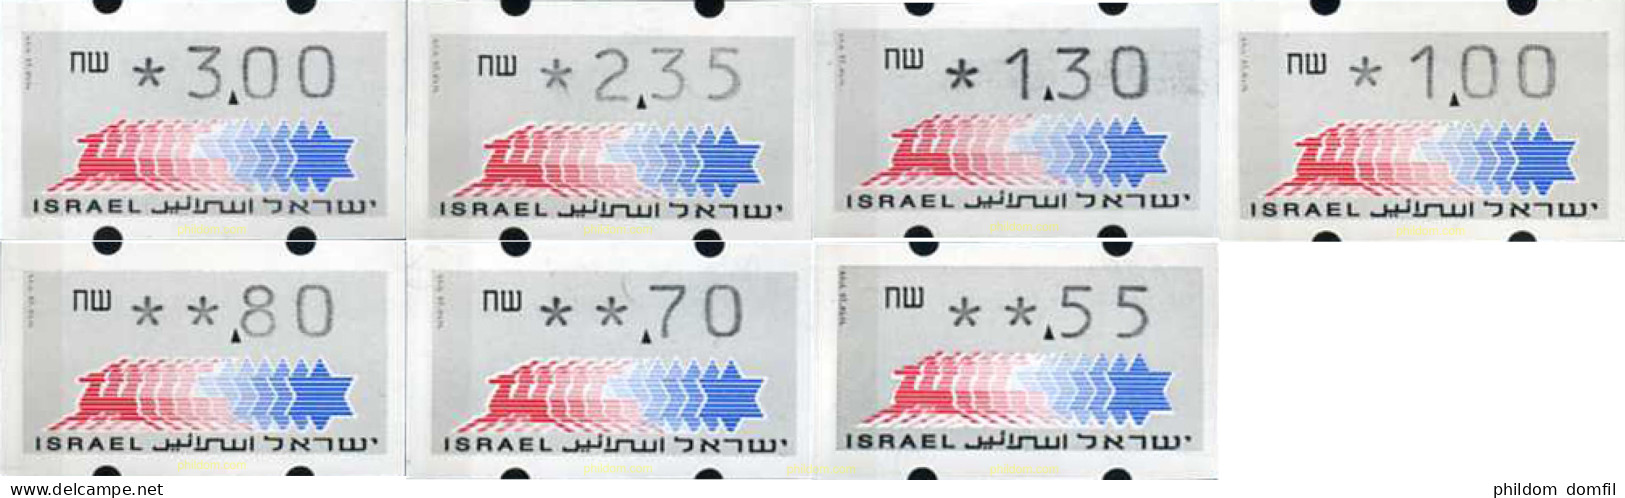 129705 MNH ISRAEL 1990 ETIQUETA DE FRANQUEO - Nuevos (sin Tab)